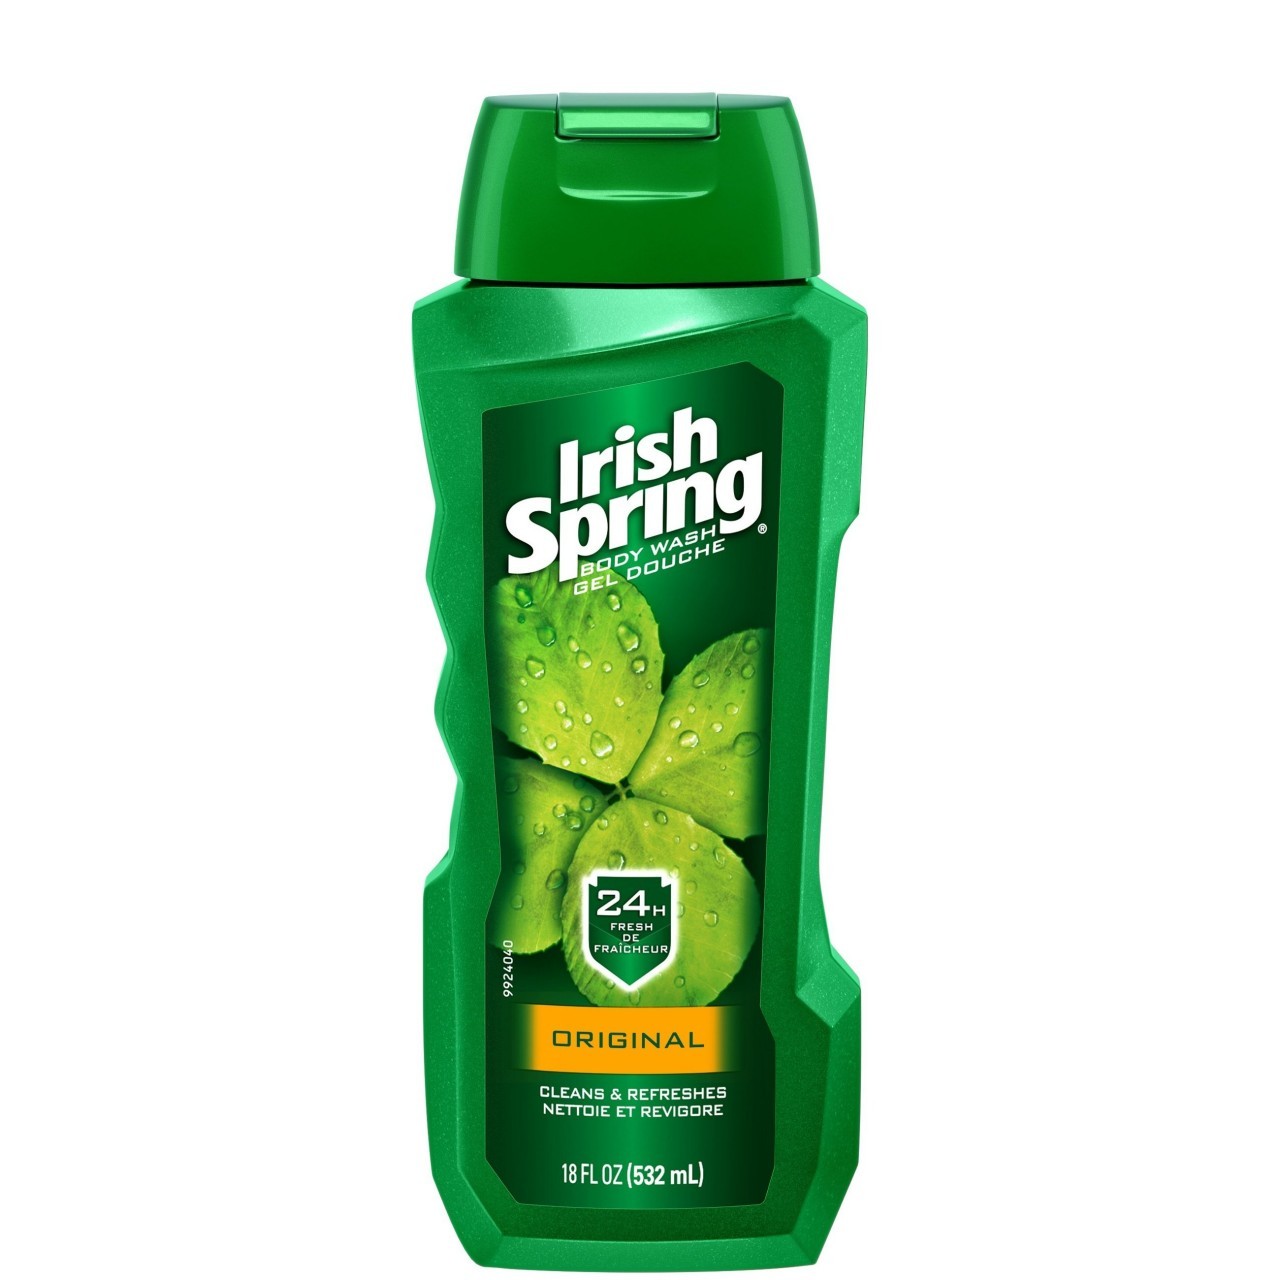 IRISH SPRING BODY WASH ORIGINAL 18oz